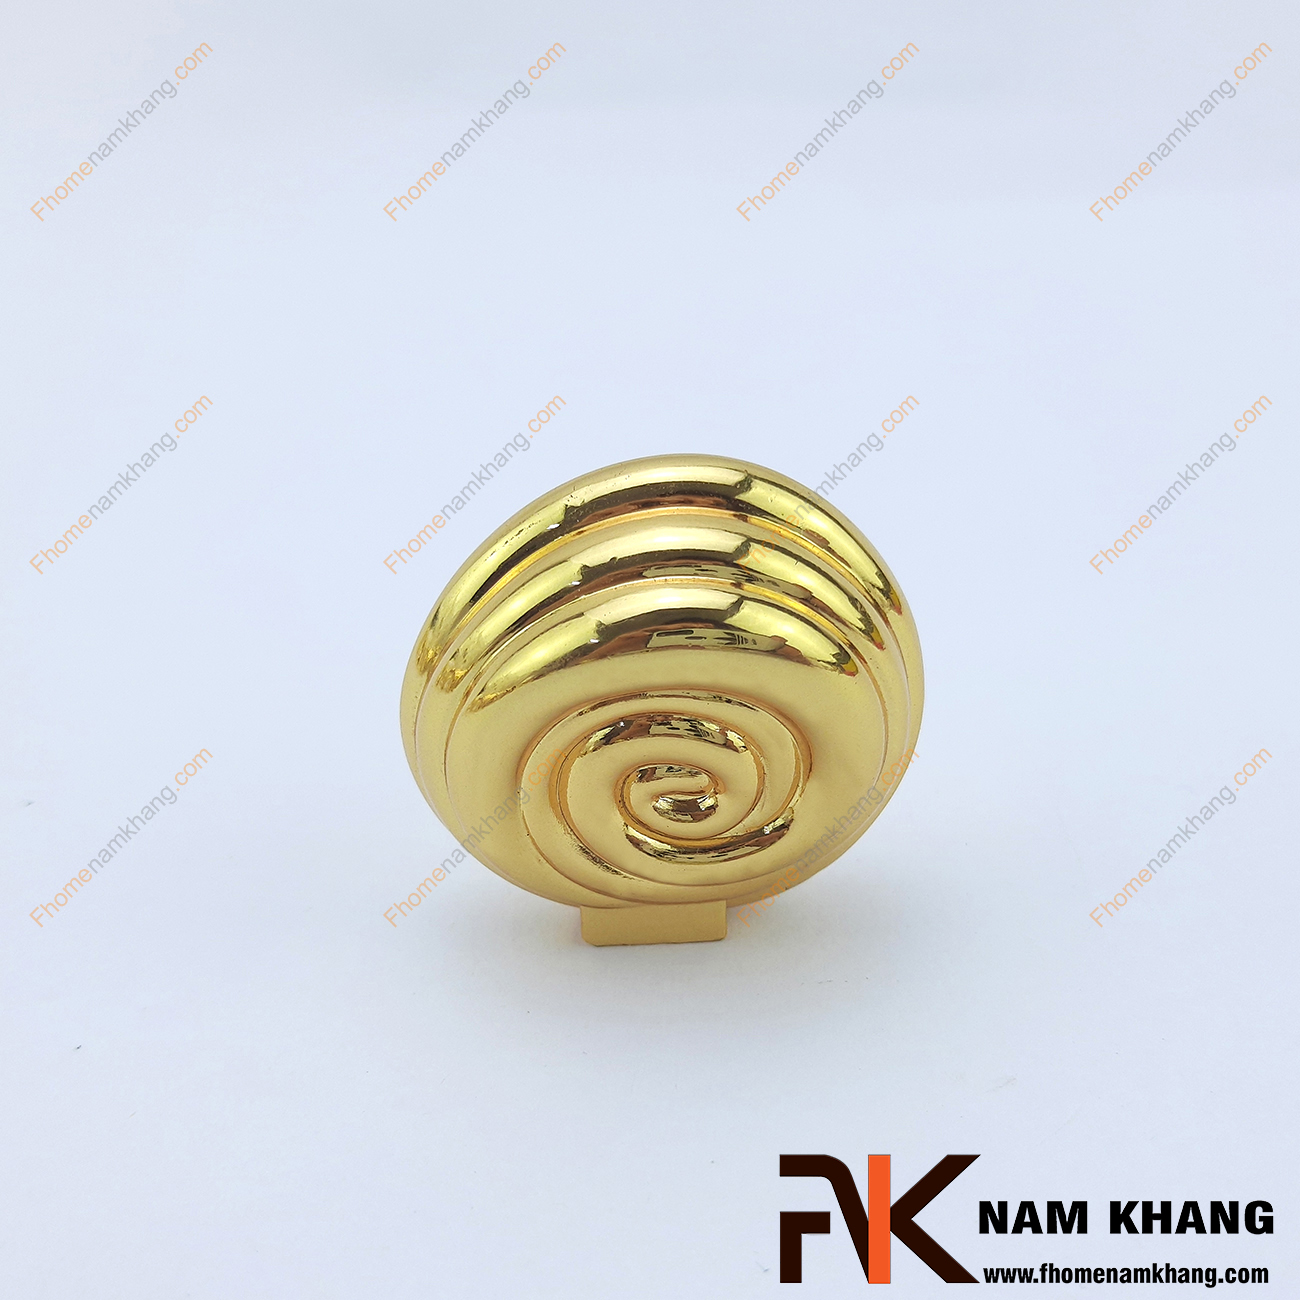 Núm kéo cửa tủ hình vỏ sò mạ vàng NK032 có khuôn dạng xoắn ốc tròn. Được chế tạo từ hợp kim chất lượng cao mạ vàng bóng ánh kim cho độ bền cao.